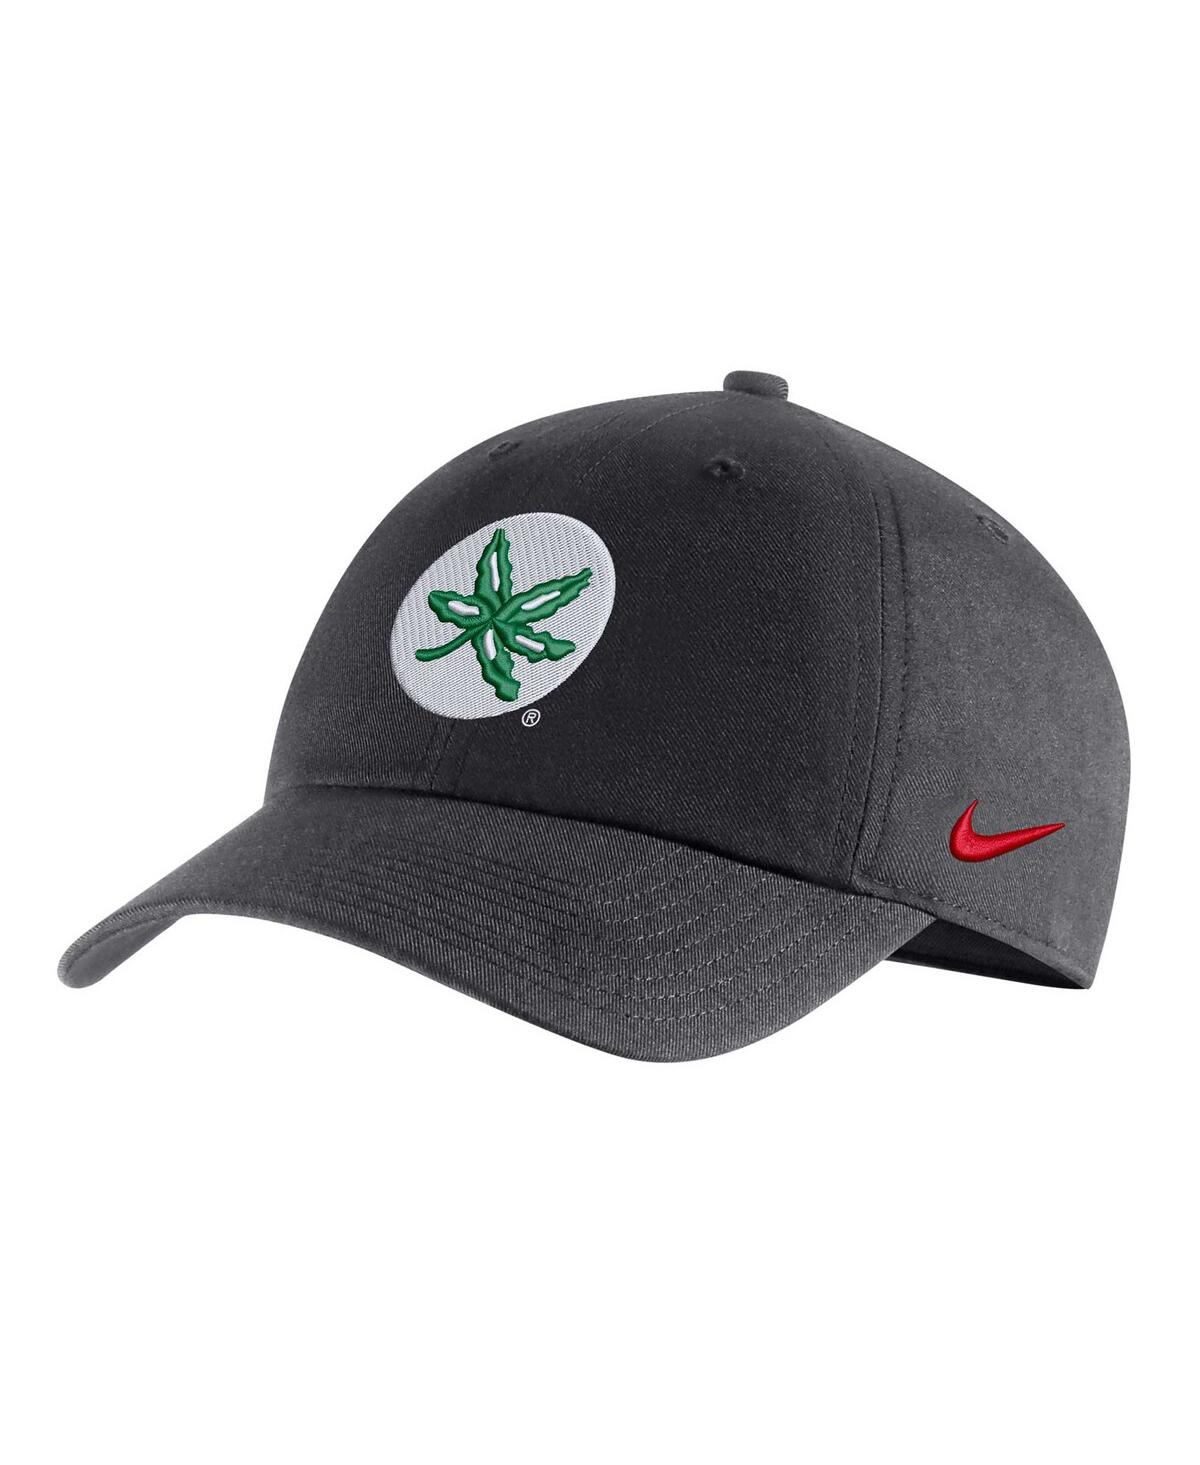 Nike Men's  Charcoal Ohio State Buckeyes Heritage86 Logo Adjustable Hat